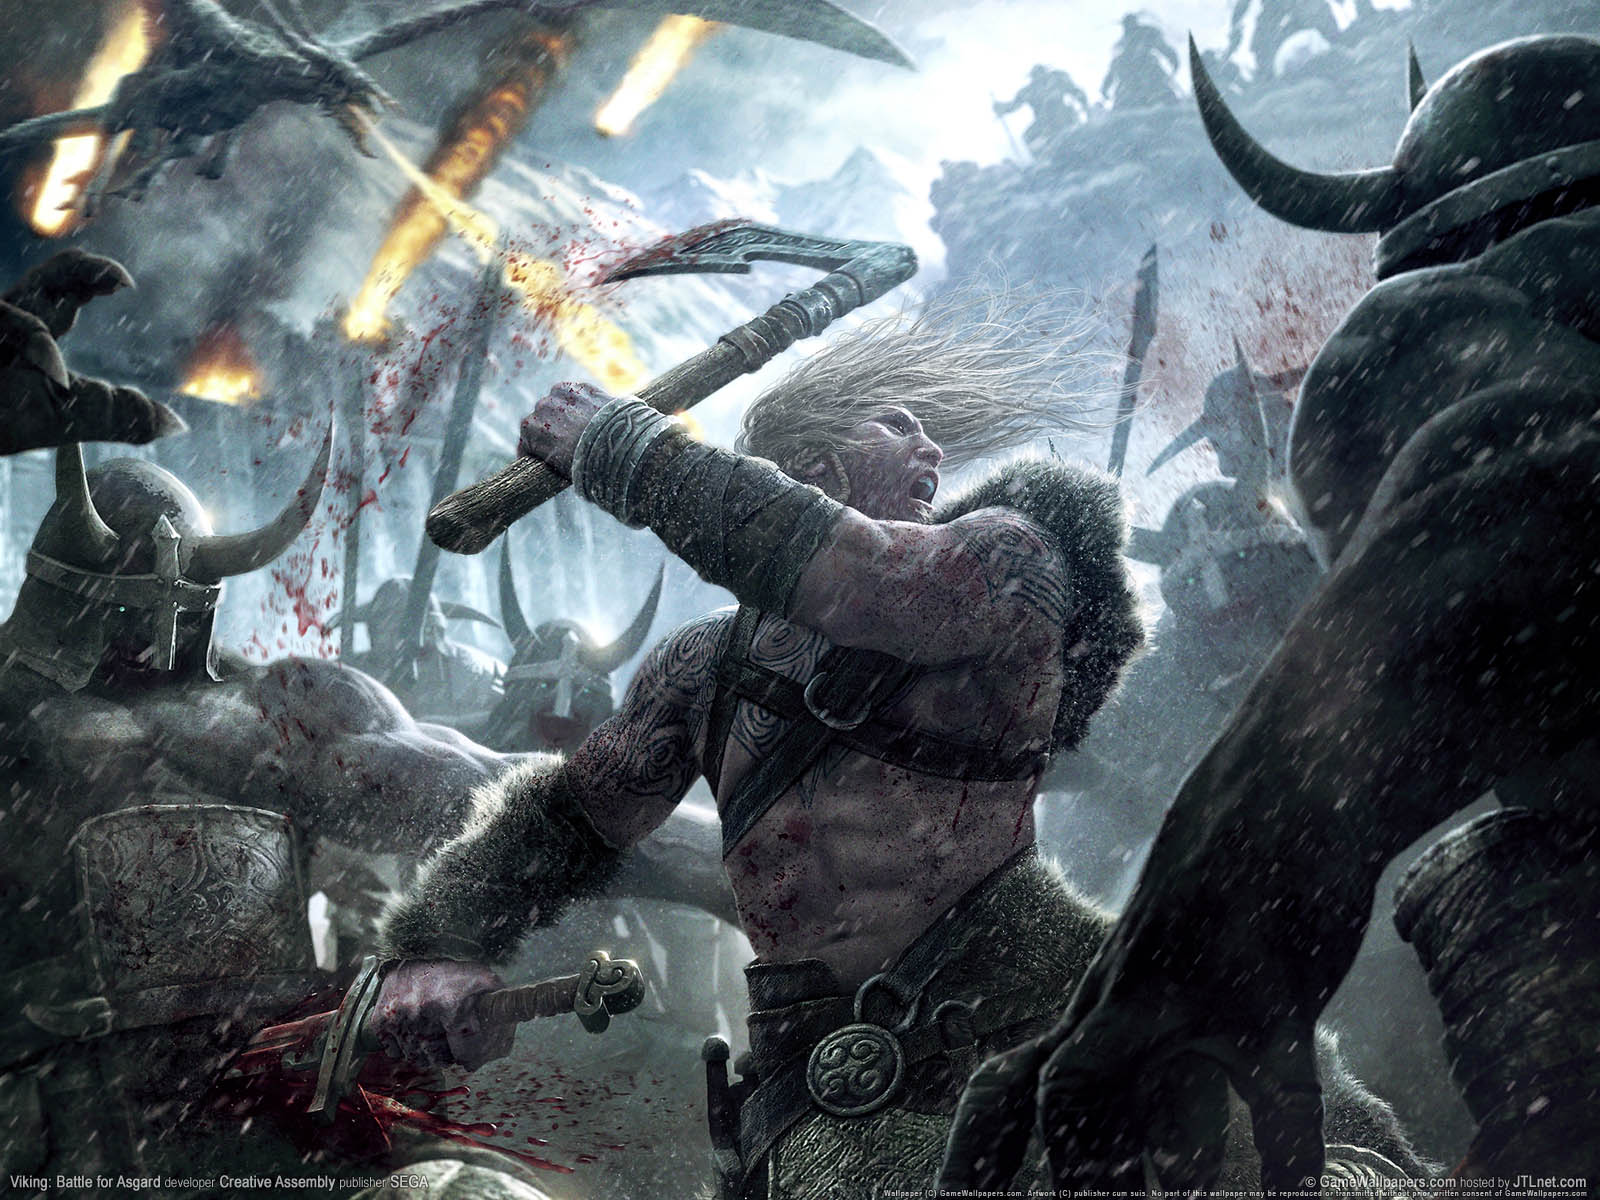 Viking: Battle for Asgard fond d'cran 01 1600x1200